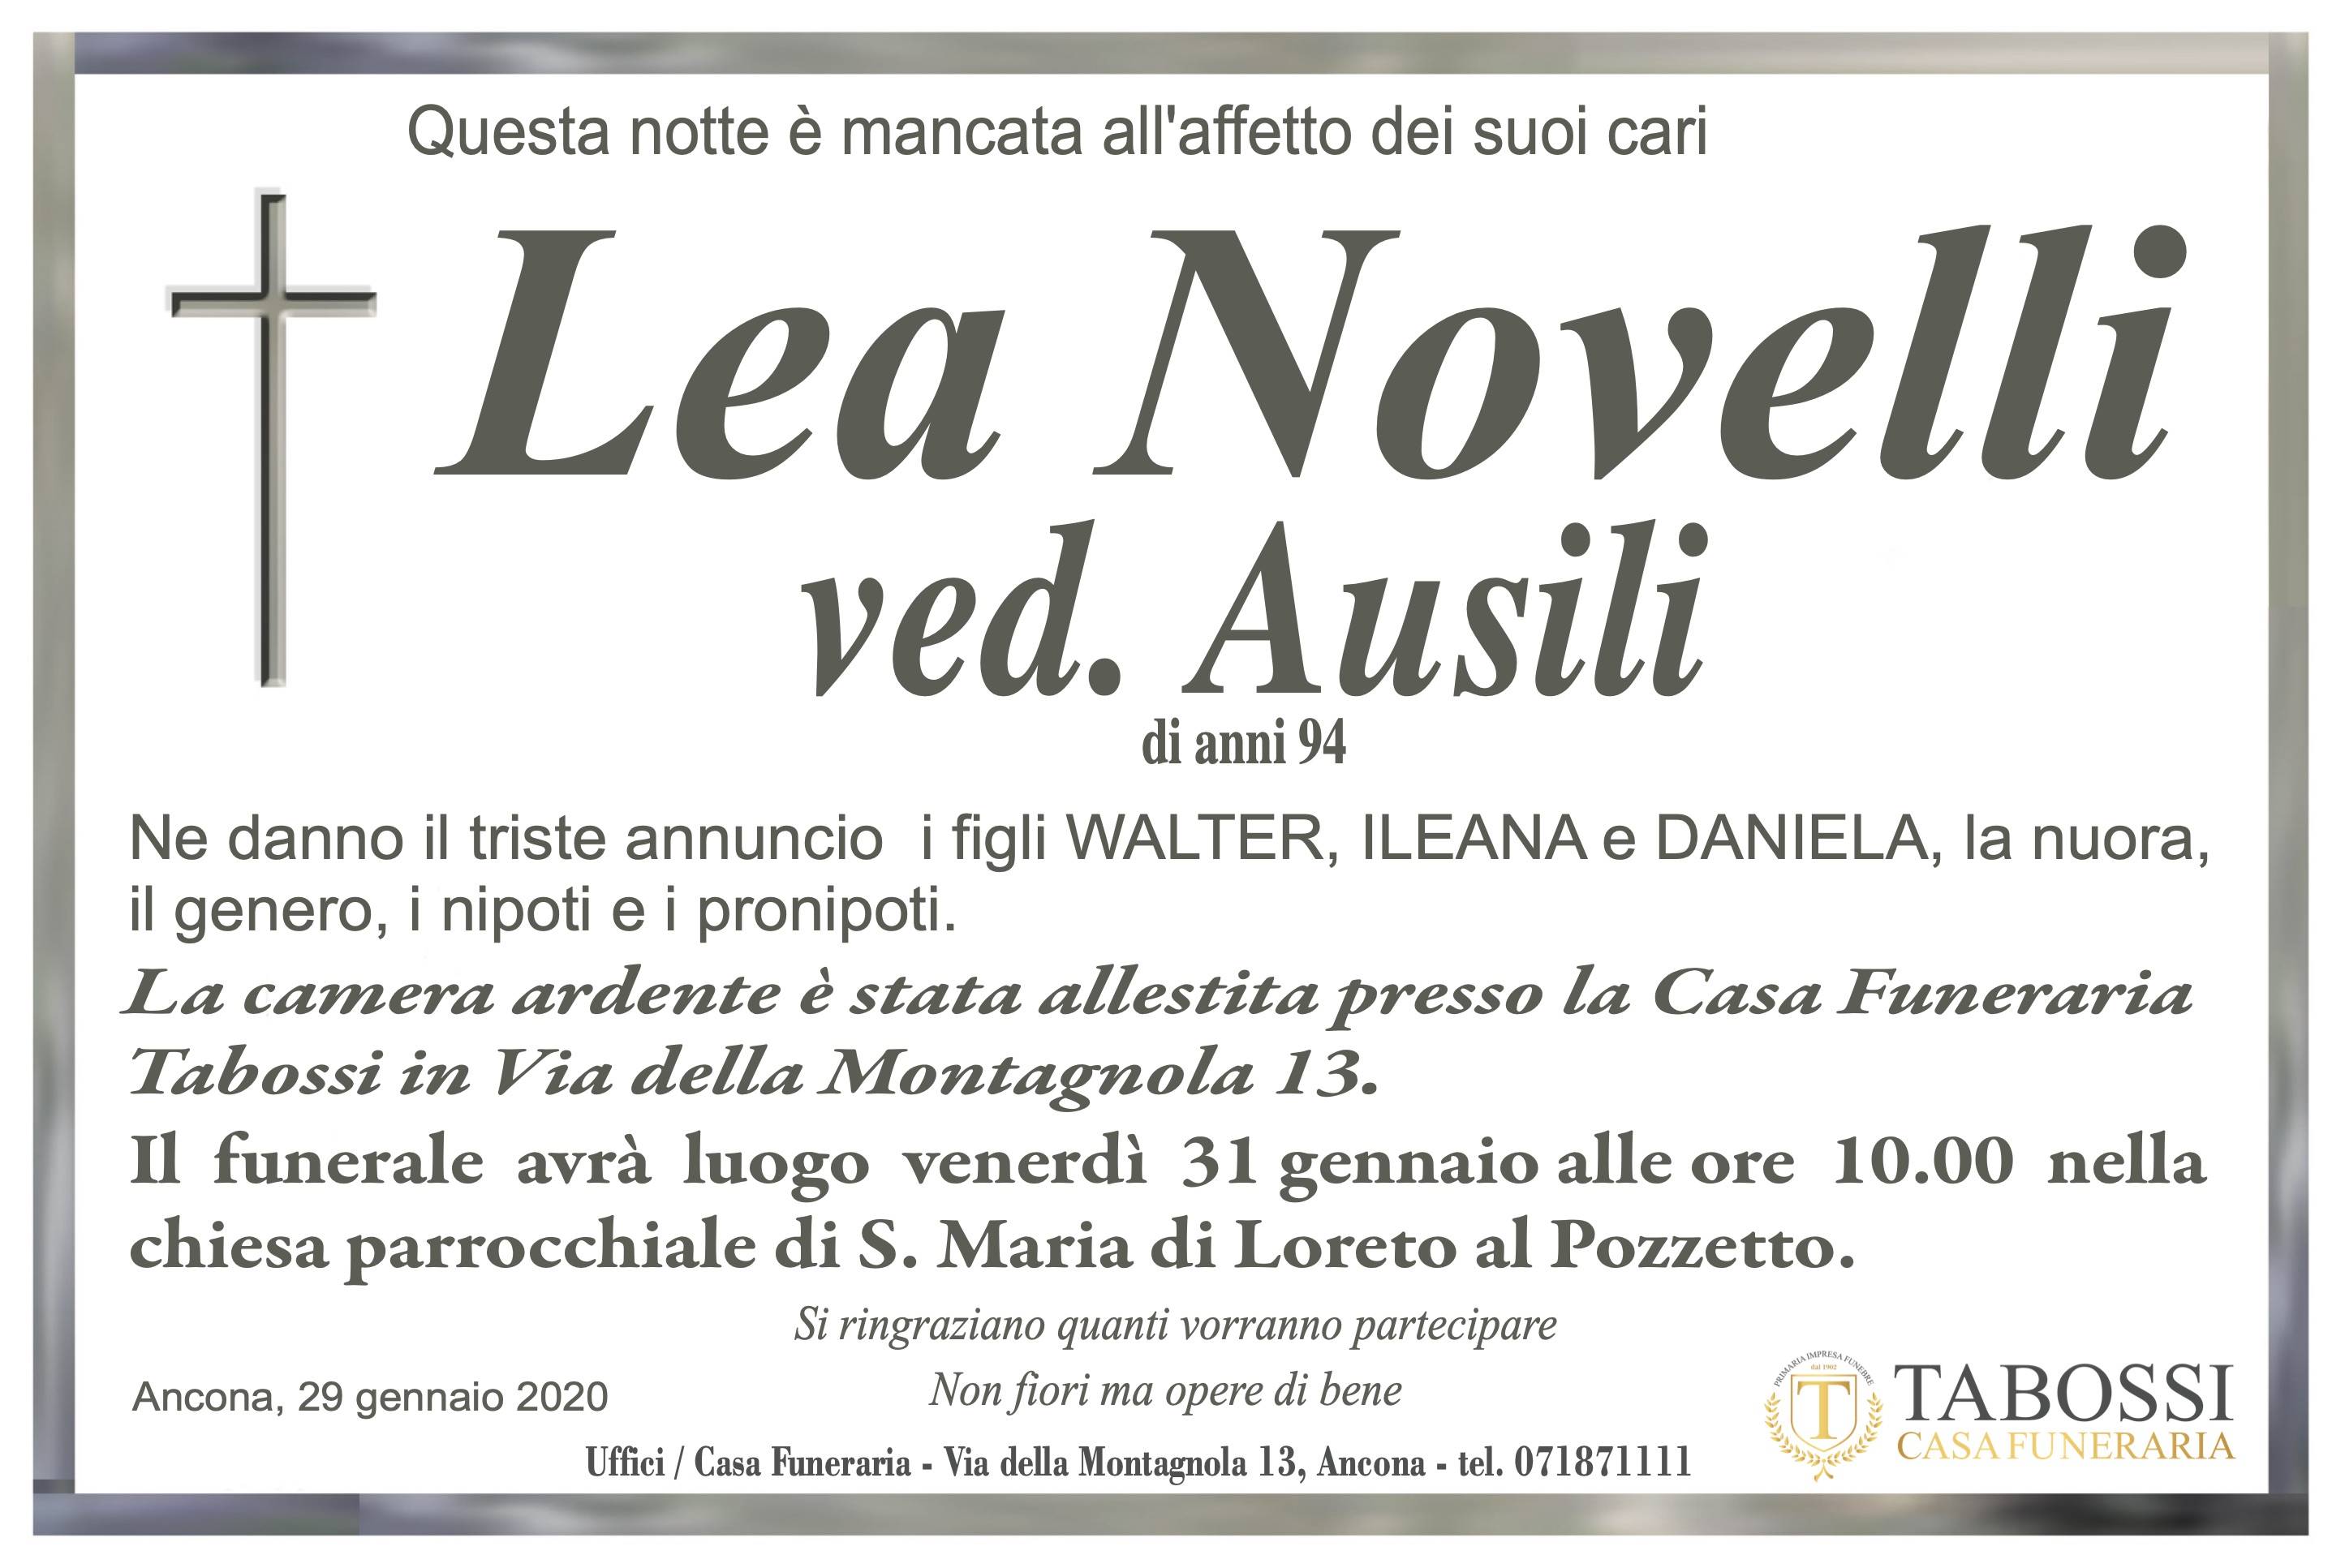 Lea Novelli